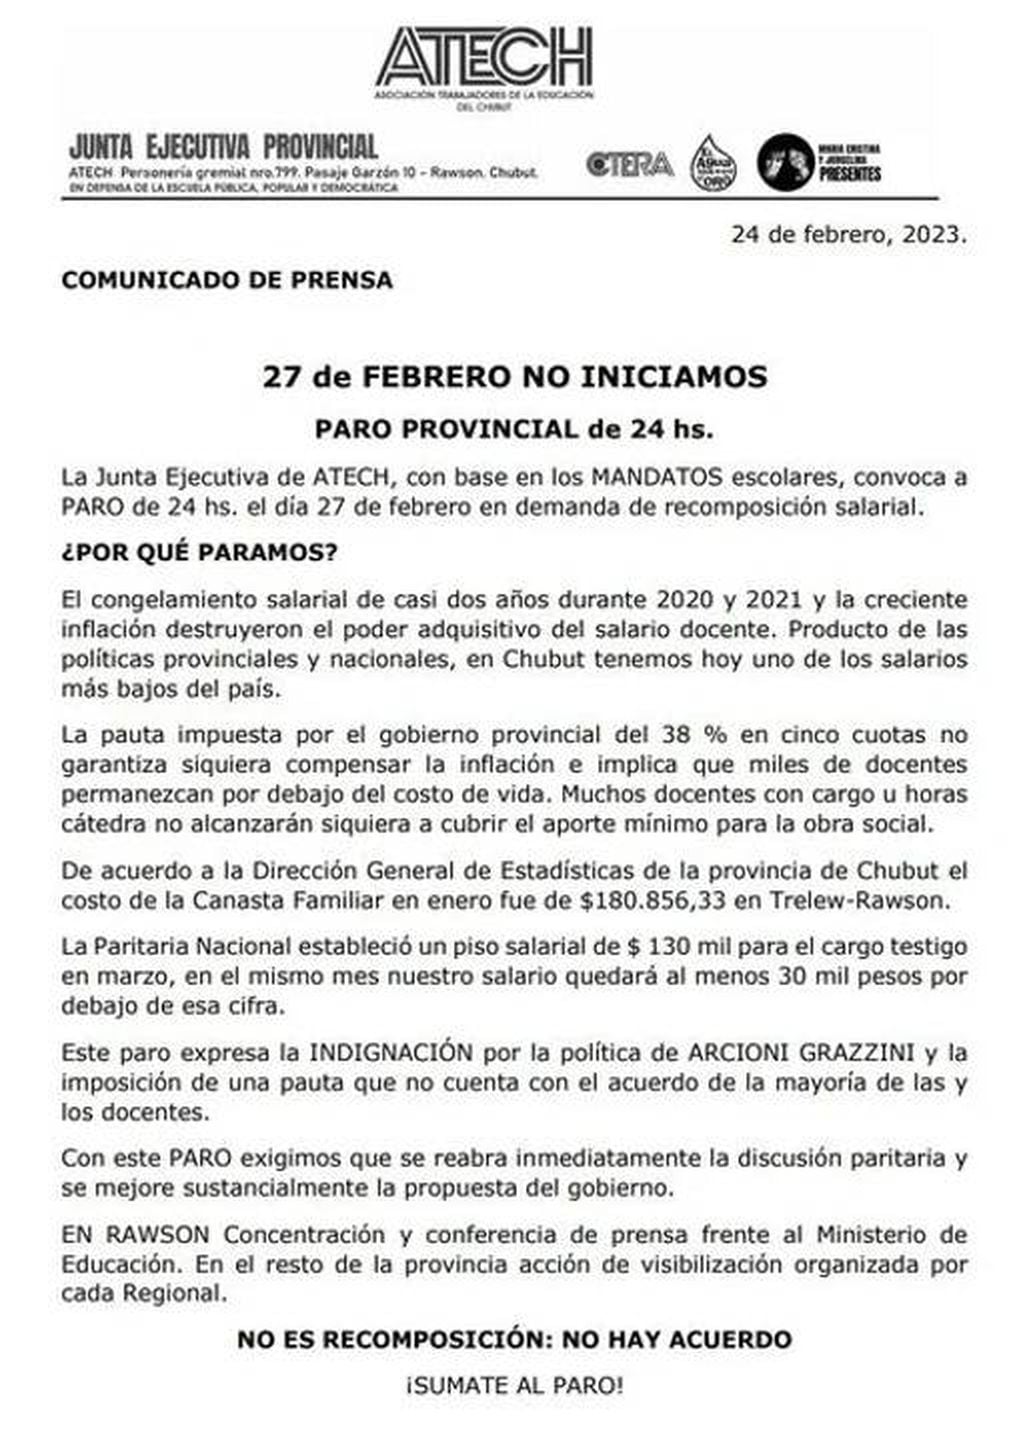 El comunicado de los docentes de Chubut, anunciando paro de 24 horas.